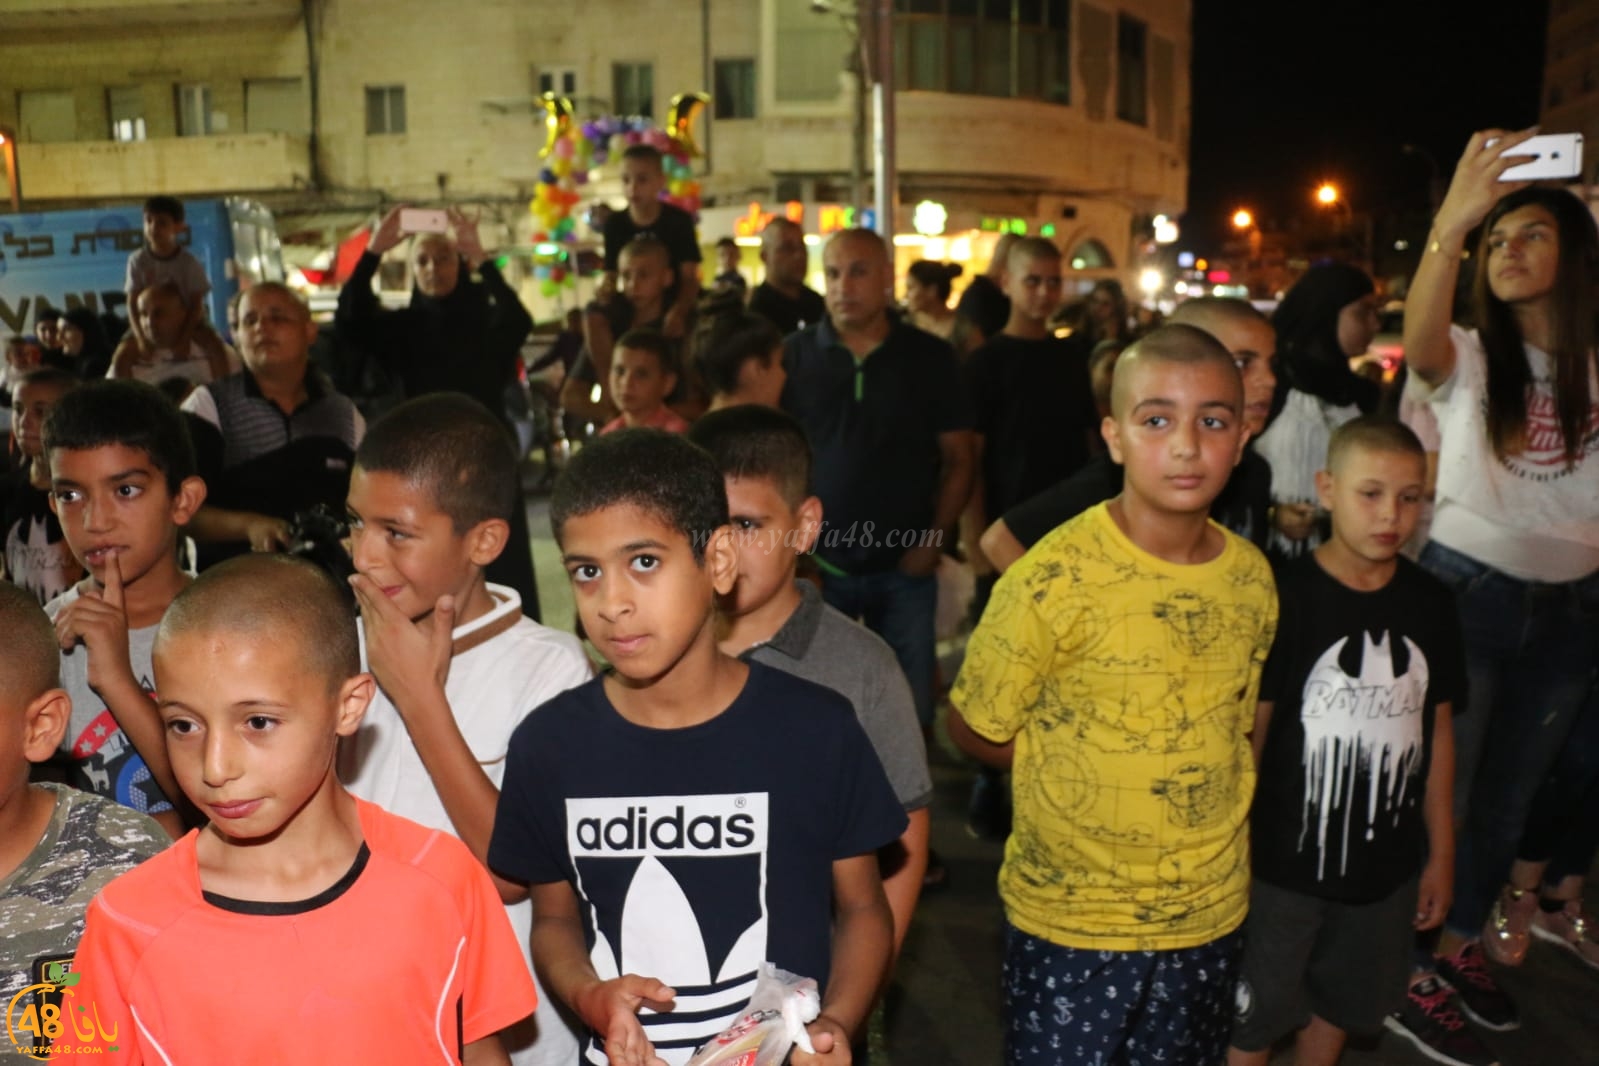 بالصور: جموع غفيرة تُشارك في مسيرة عيد الفطر السعيد بمدينة يافا 